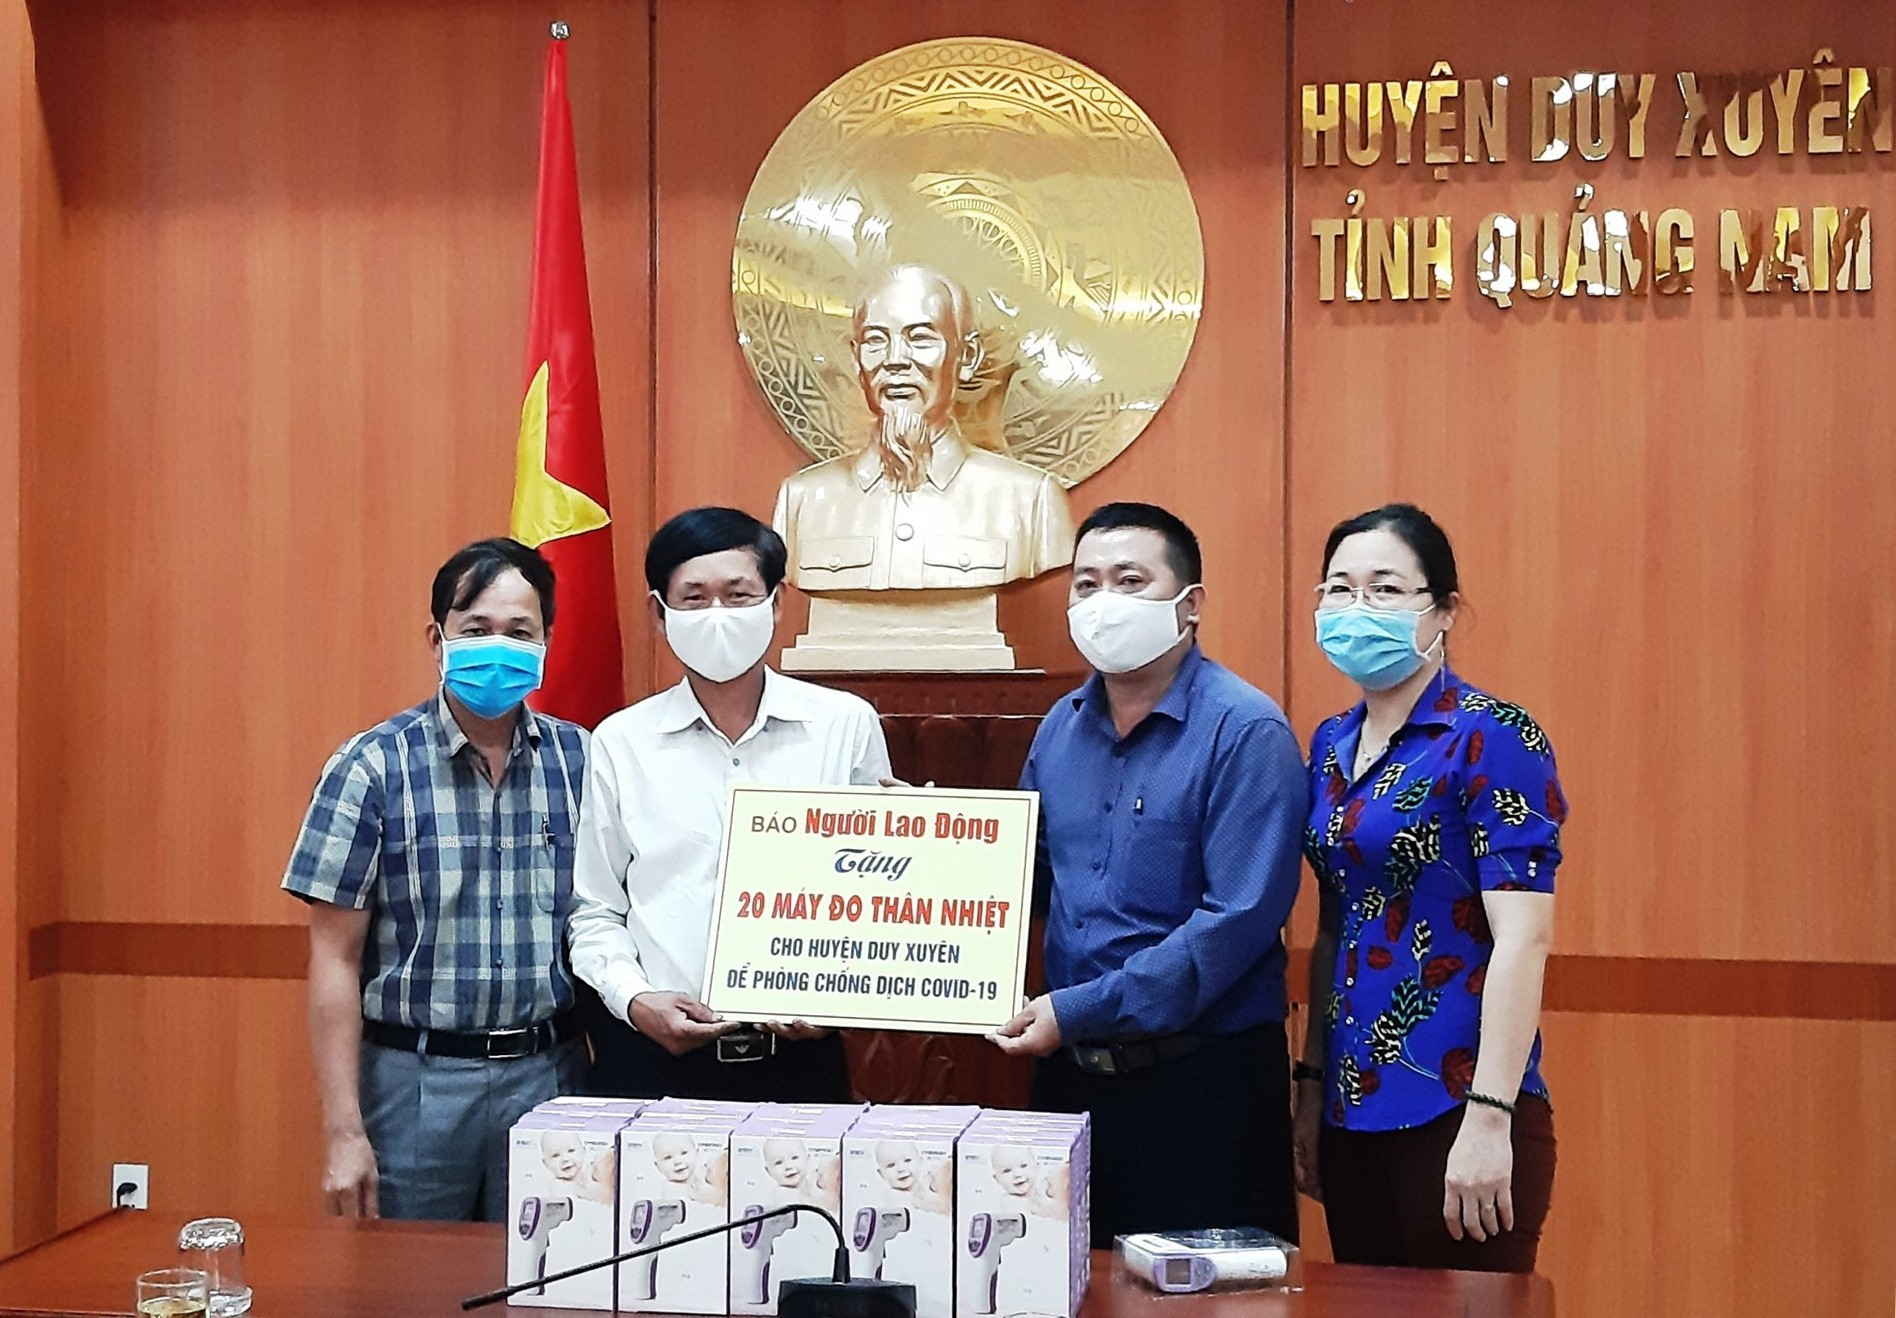 Đại diện Báo Người lao động trao tặng 20 máy đo thân nhiệt cho lãnh đạo chính quyền huyện Duy Xuyên vào sáng nay 8.4. Ảnh: H.N